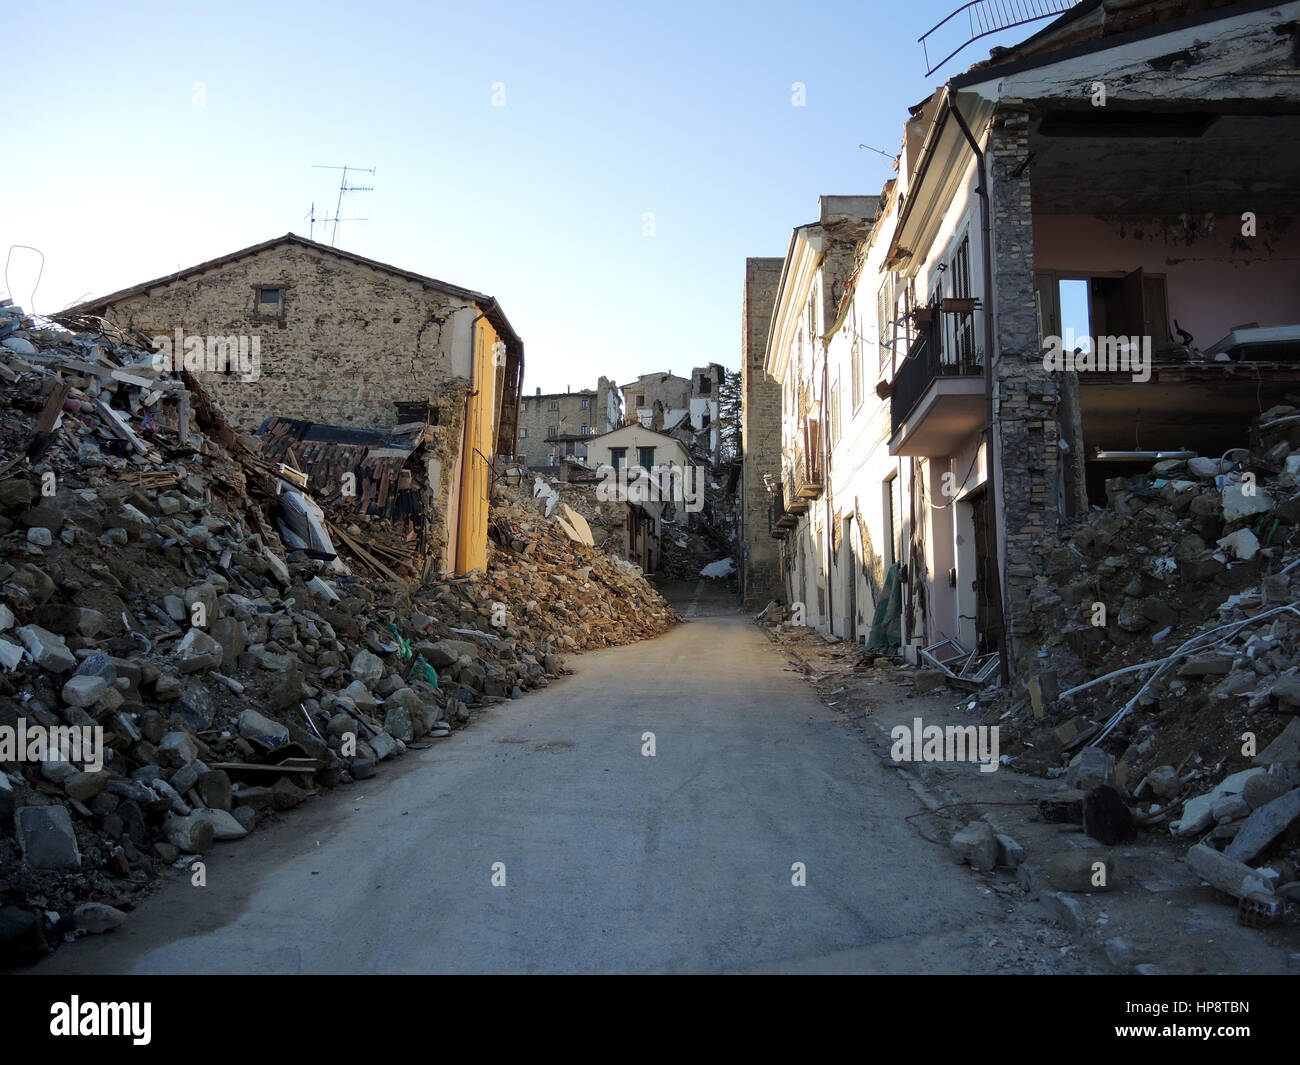 Accumoli, Italien. 16. Februar 2017. Ansicht der zerstörten Gebäude in der Gemeinde Accumoli, Italien, 16. Februar 2017. Die Region ist von mehreren Erdbeben seit 24. August 2016 getroffen worden. Bildnachweis: Dpa/Alamy Live-Nachrichten Stockfoto